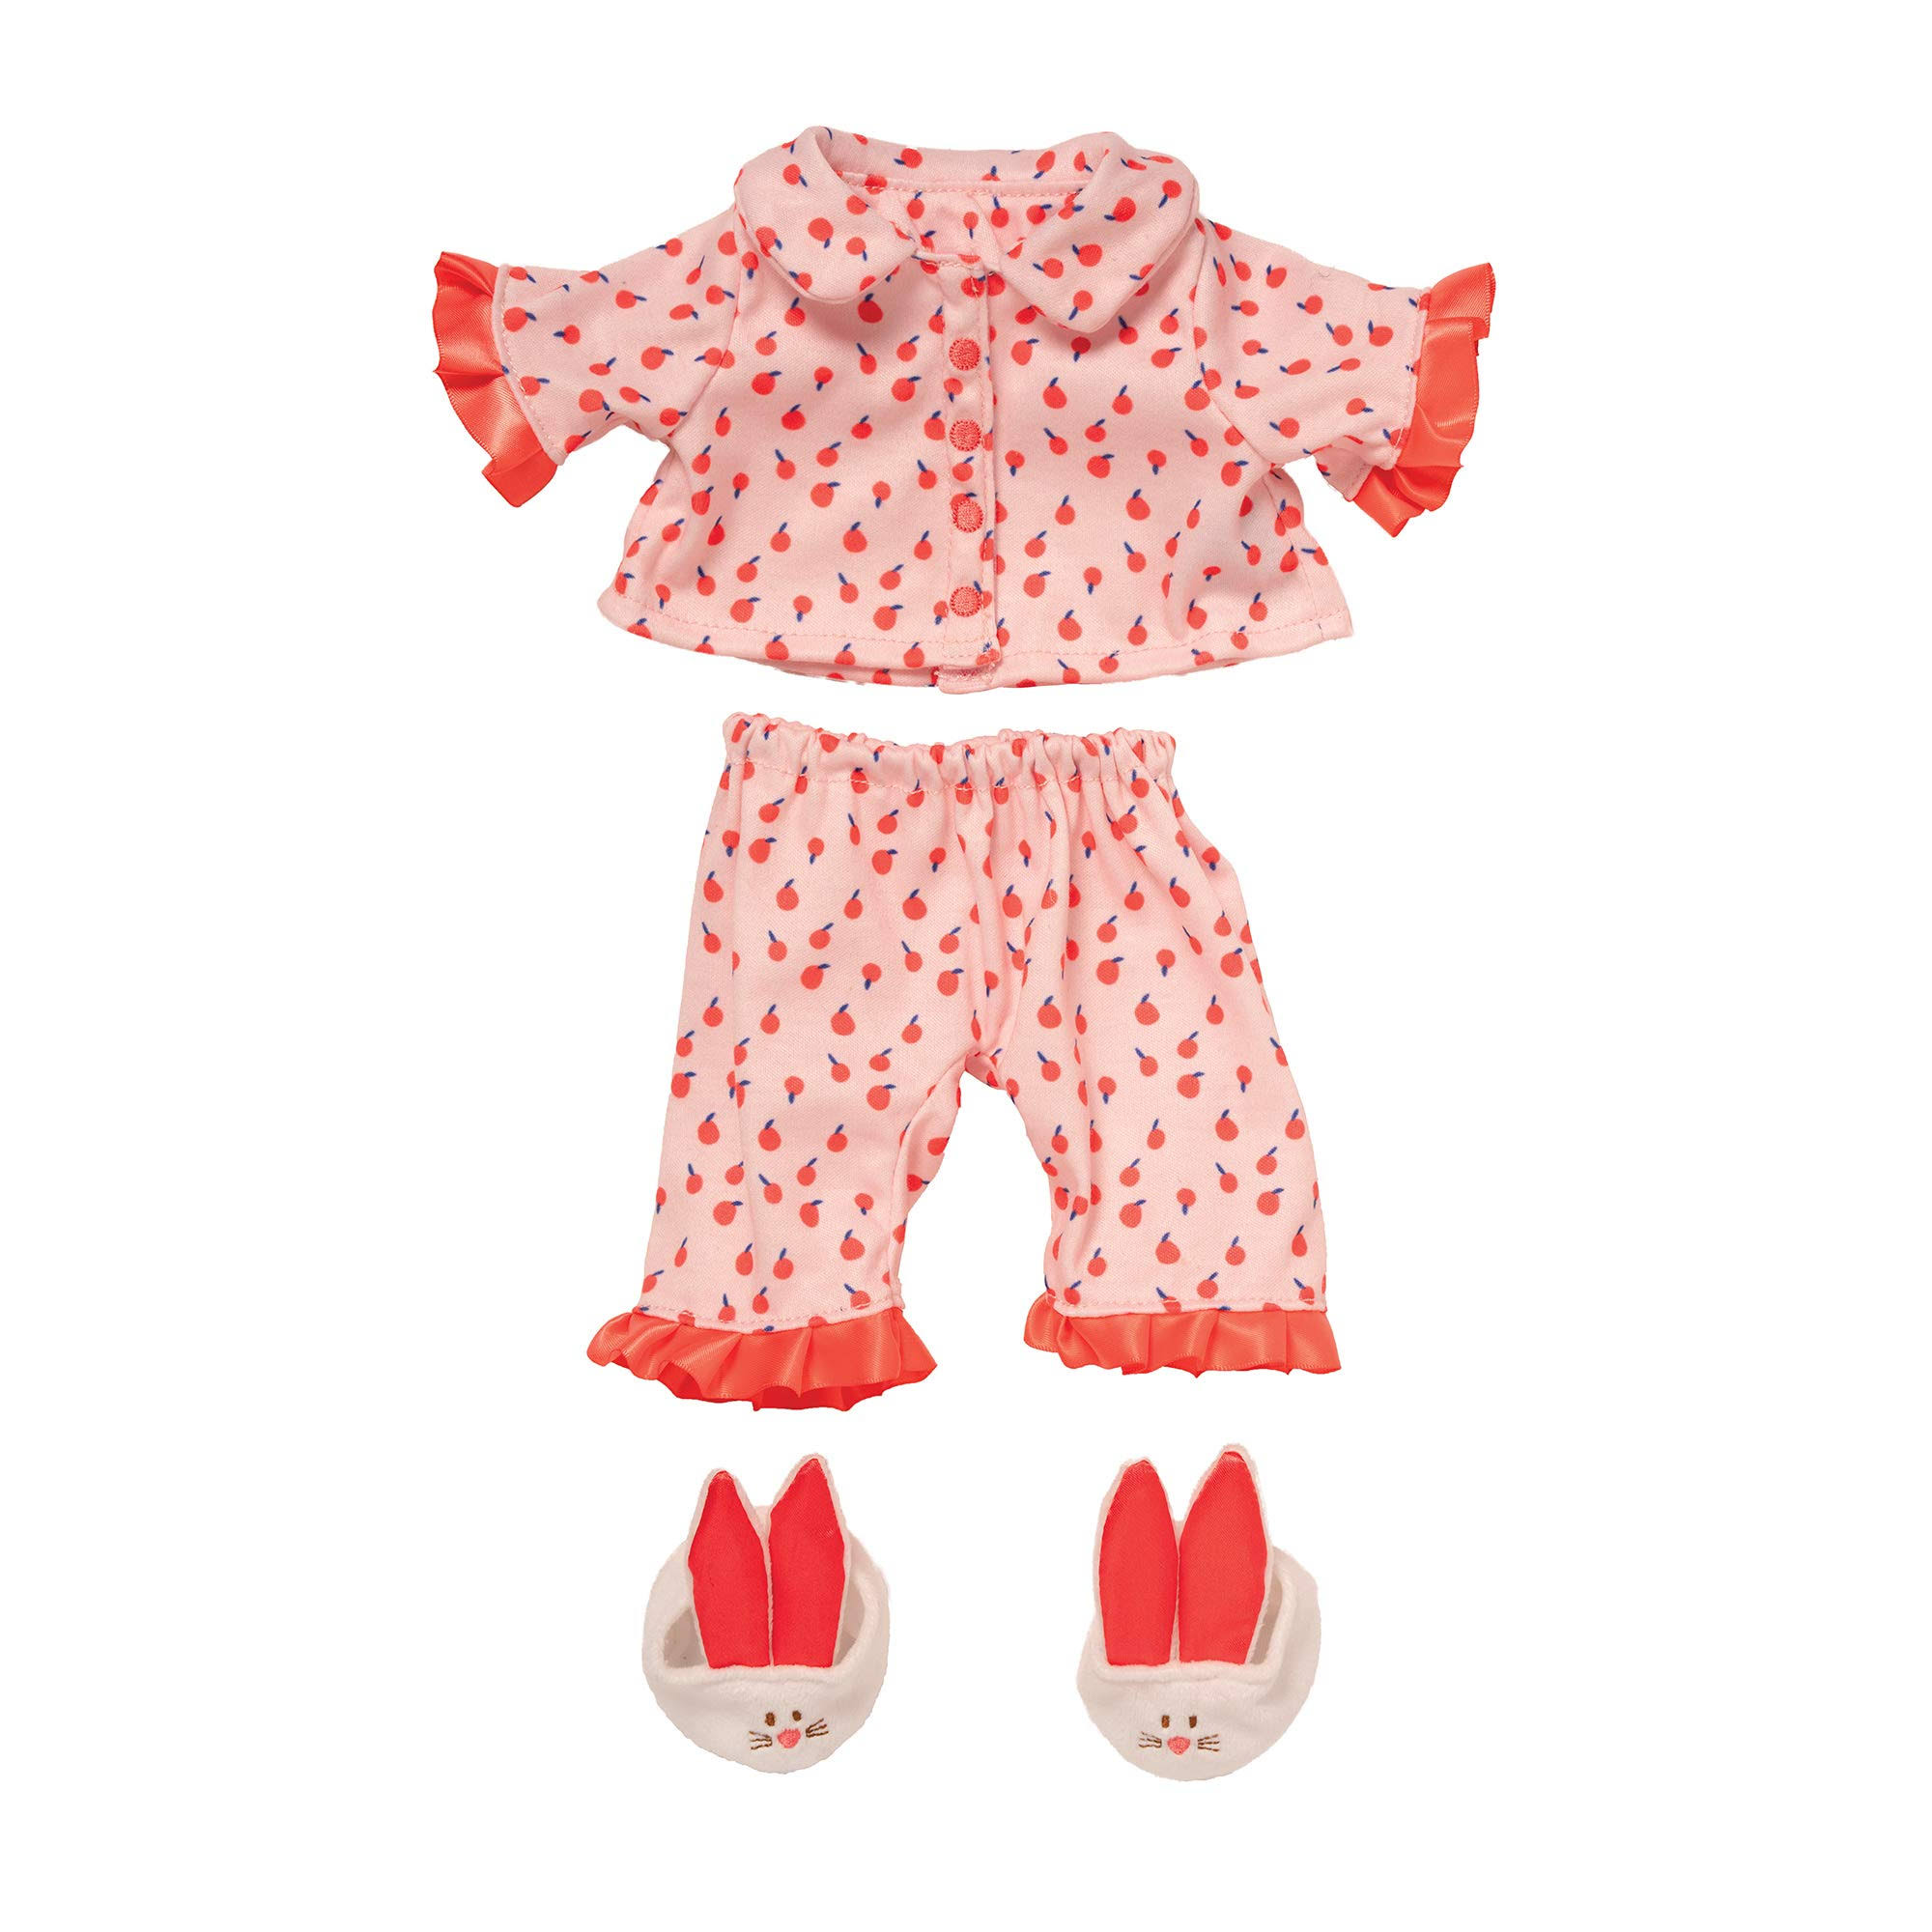 Manhattan Toy Outfit Baby Stella 30.5 cm Textile Pink 3 Piece